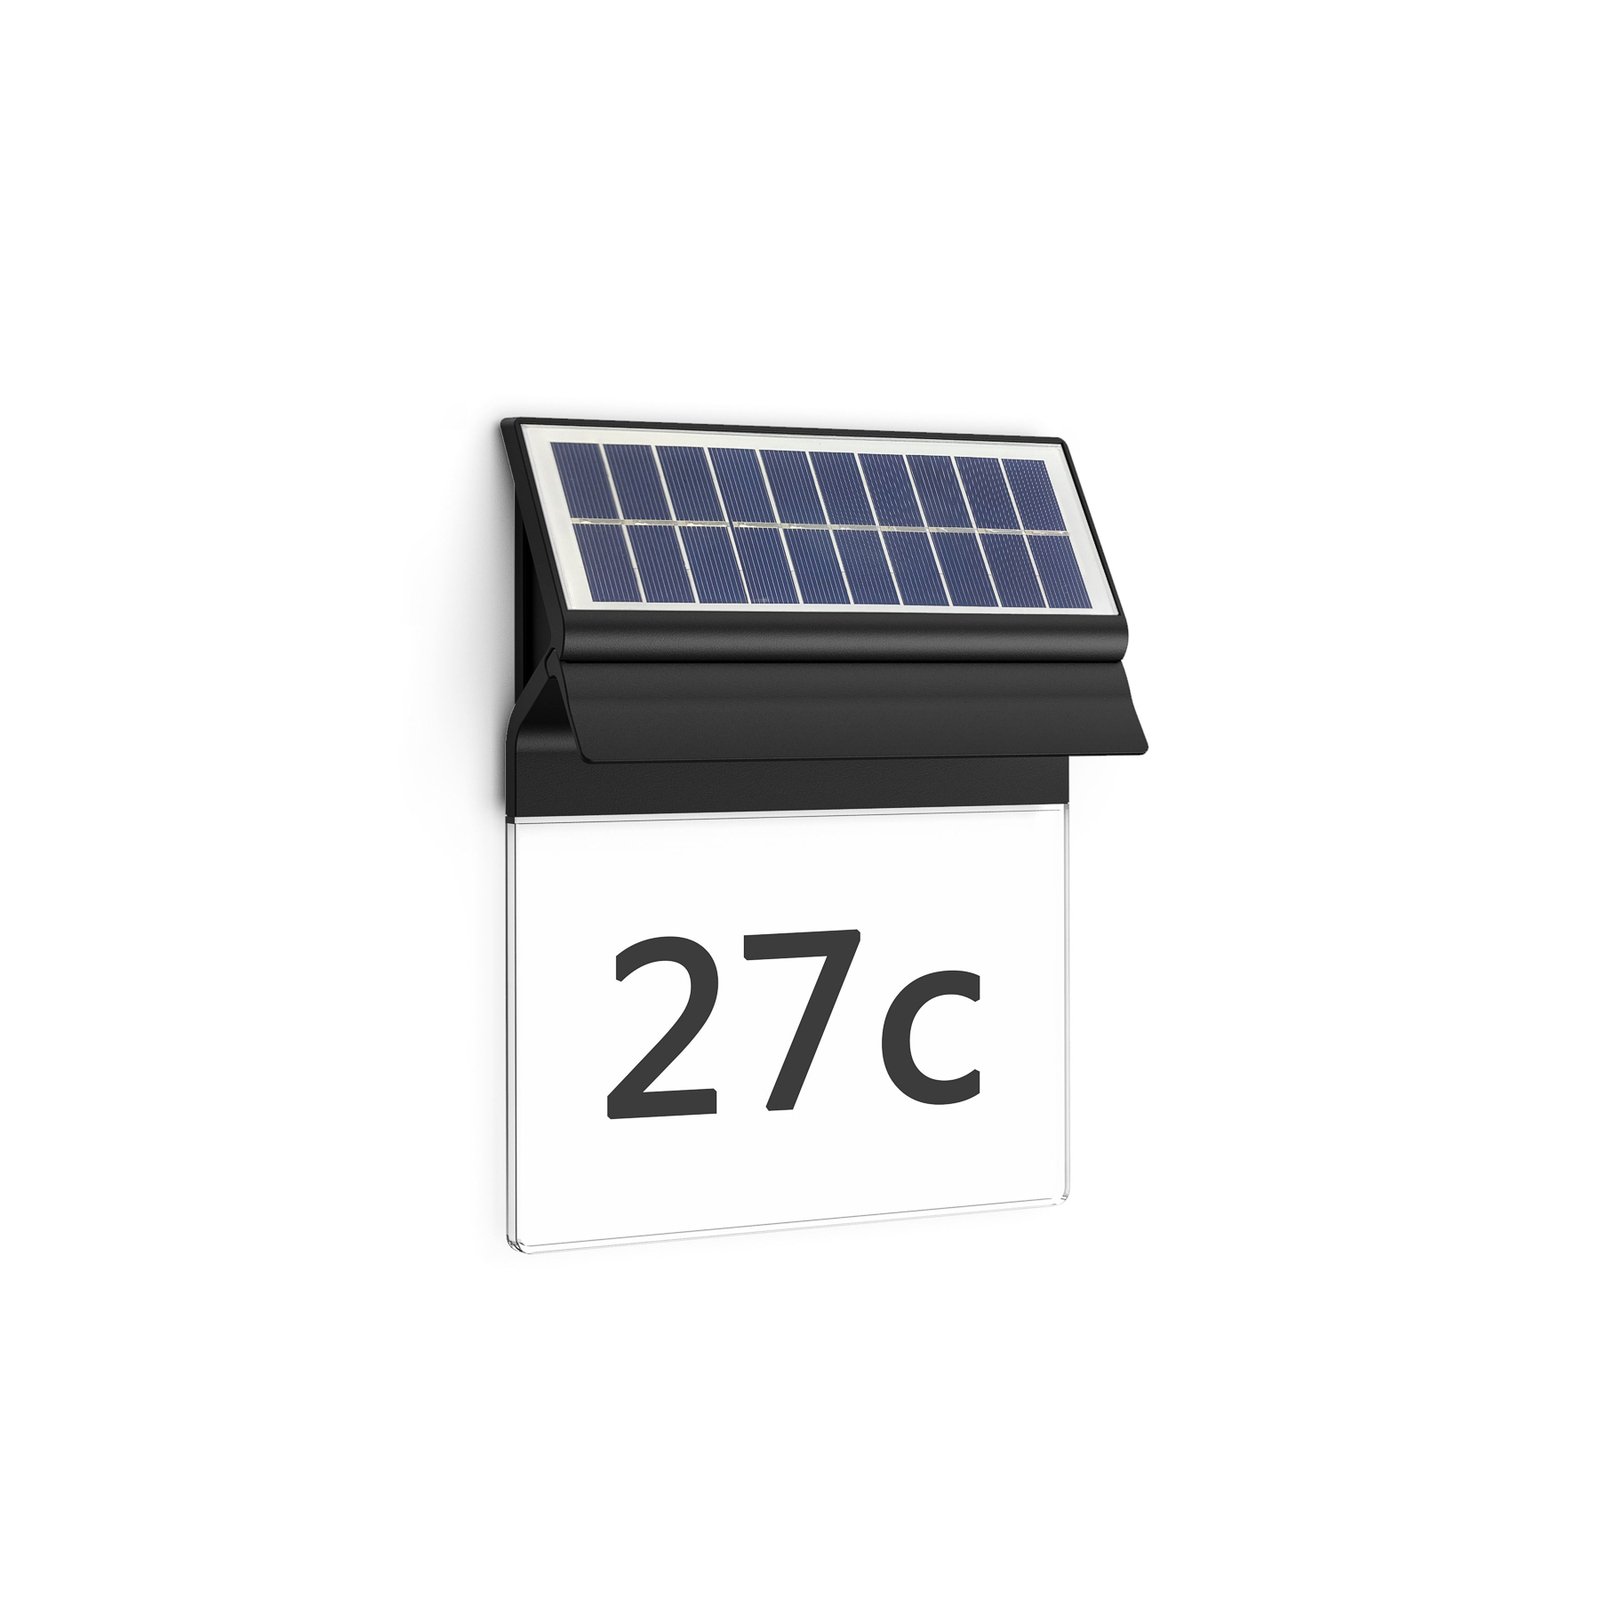 Philips LED solární nástěnné světlo s domovním číslem Enkara